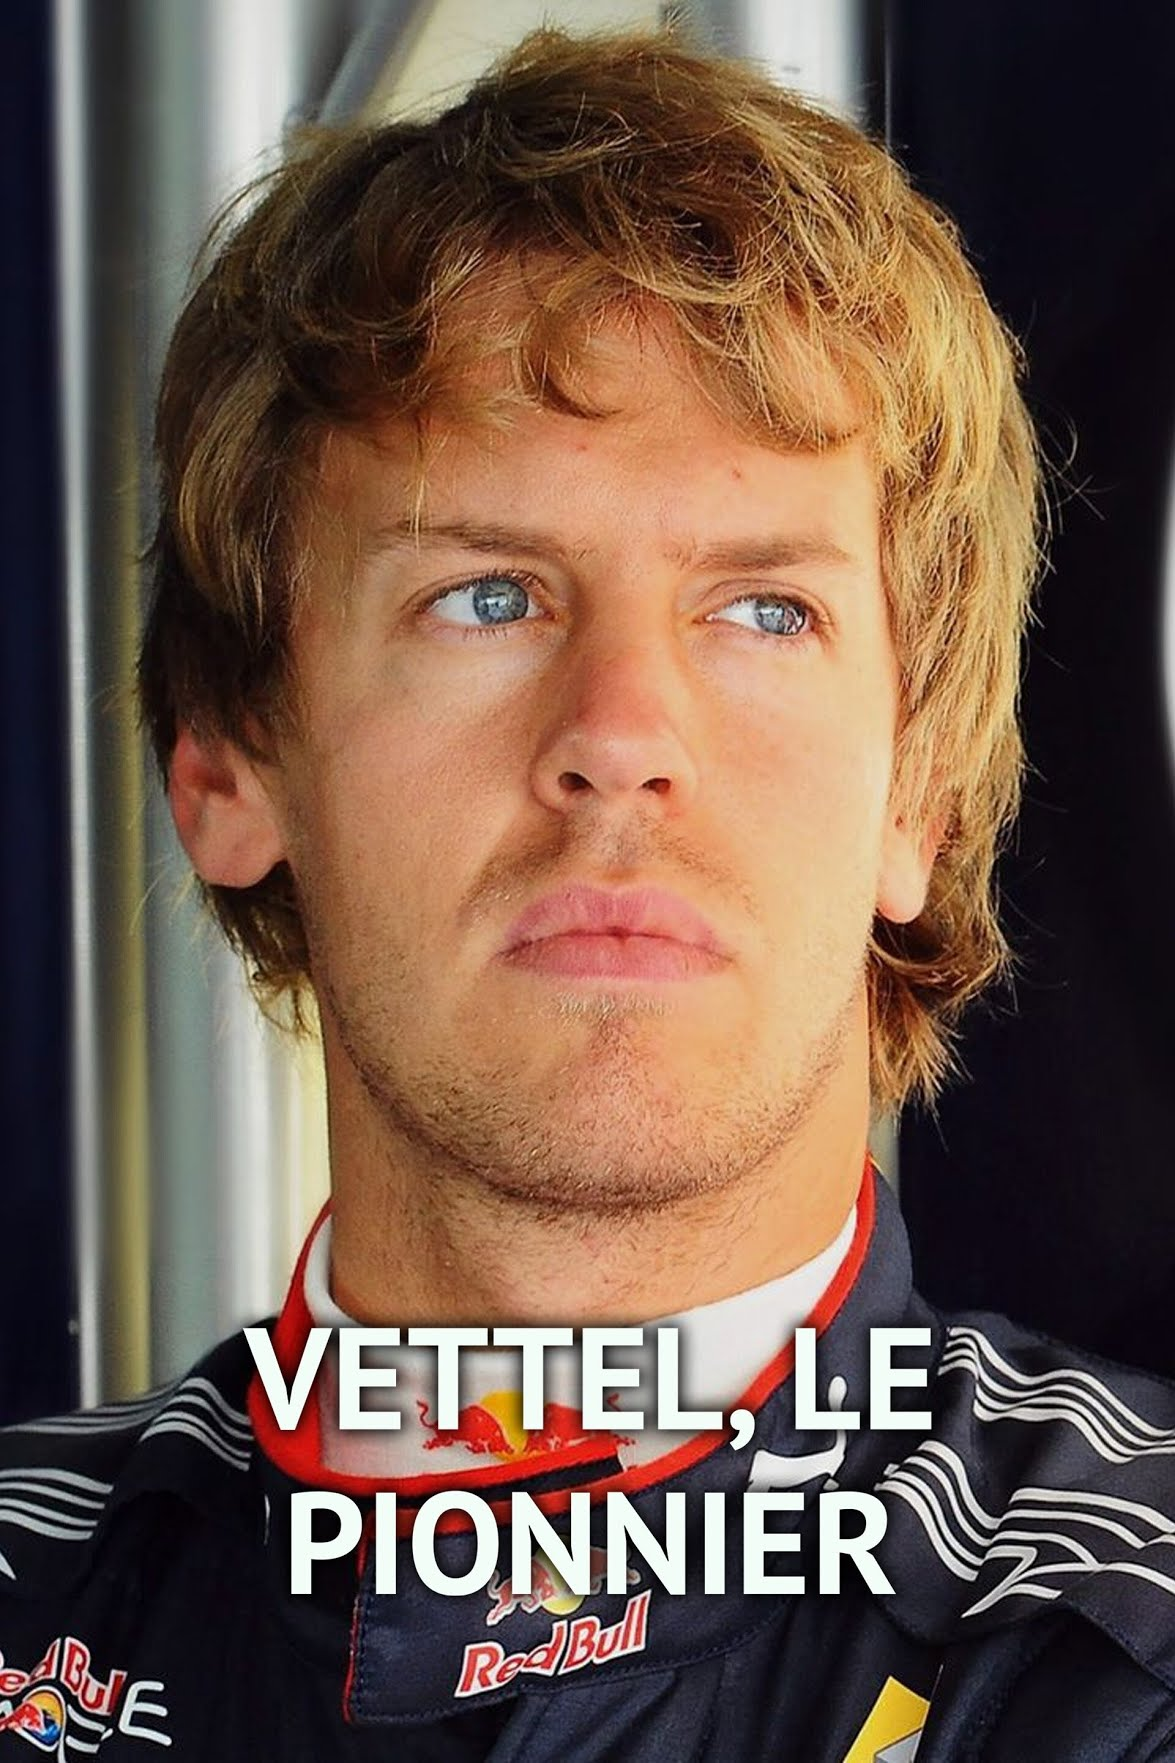 Vettel, le Pionnier Streaming VF Français Complet Gratuit